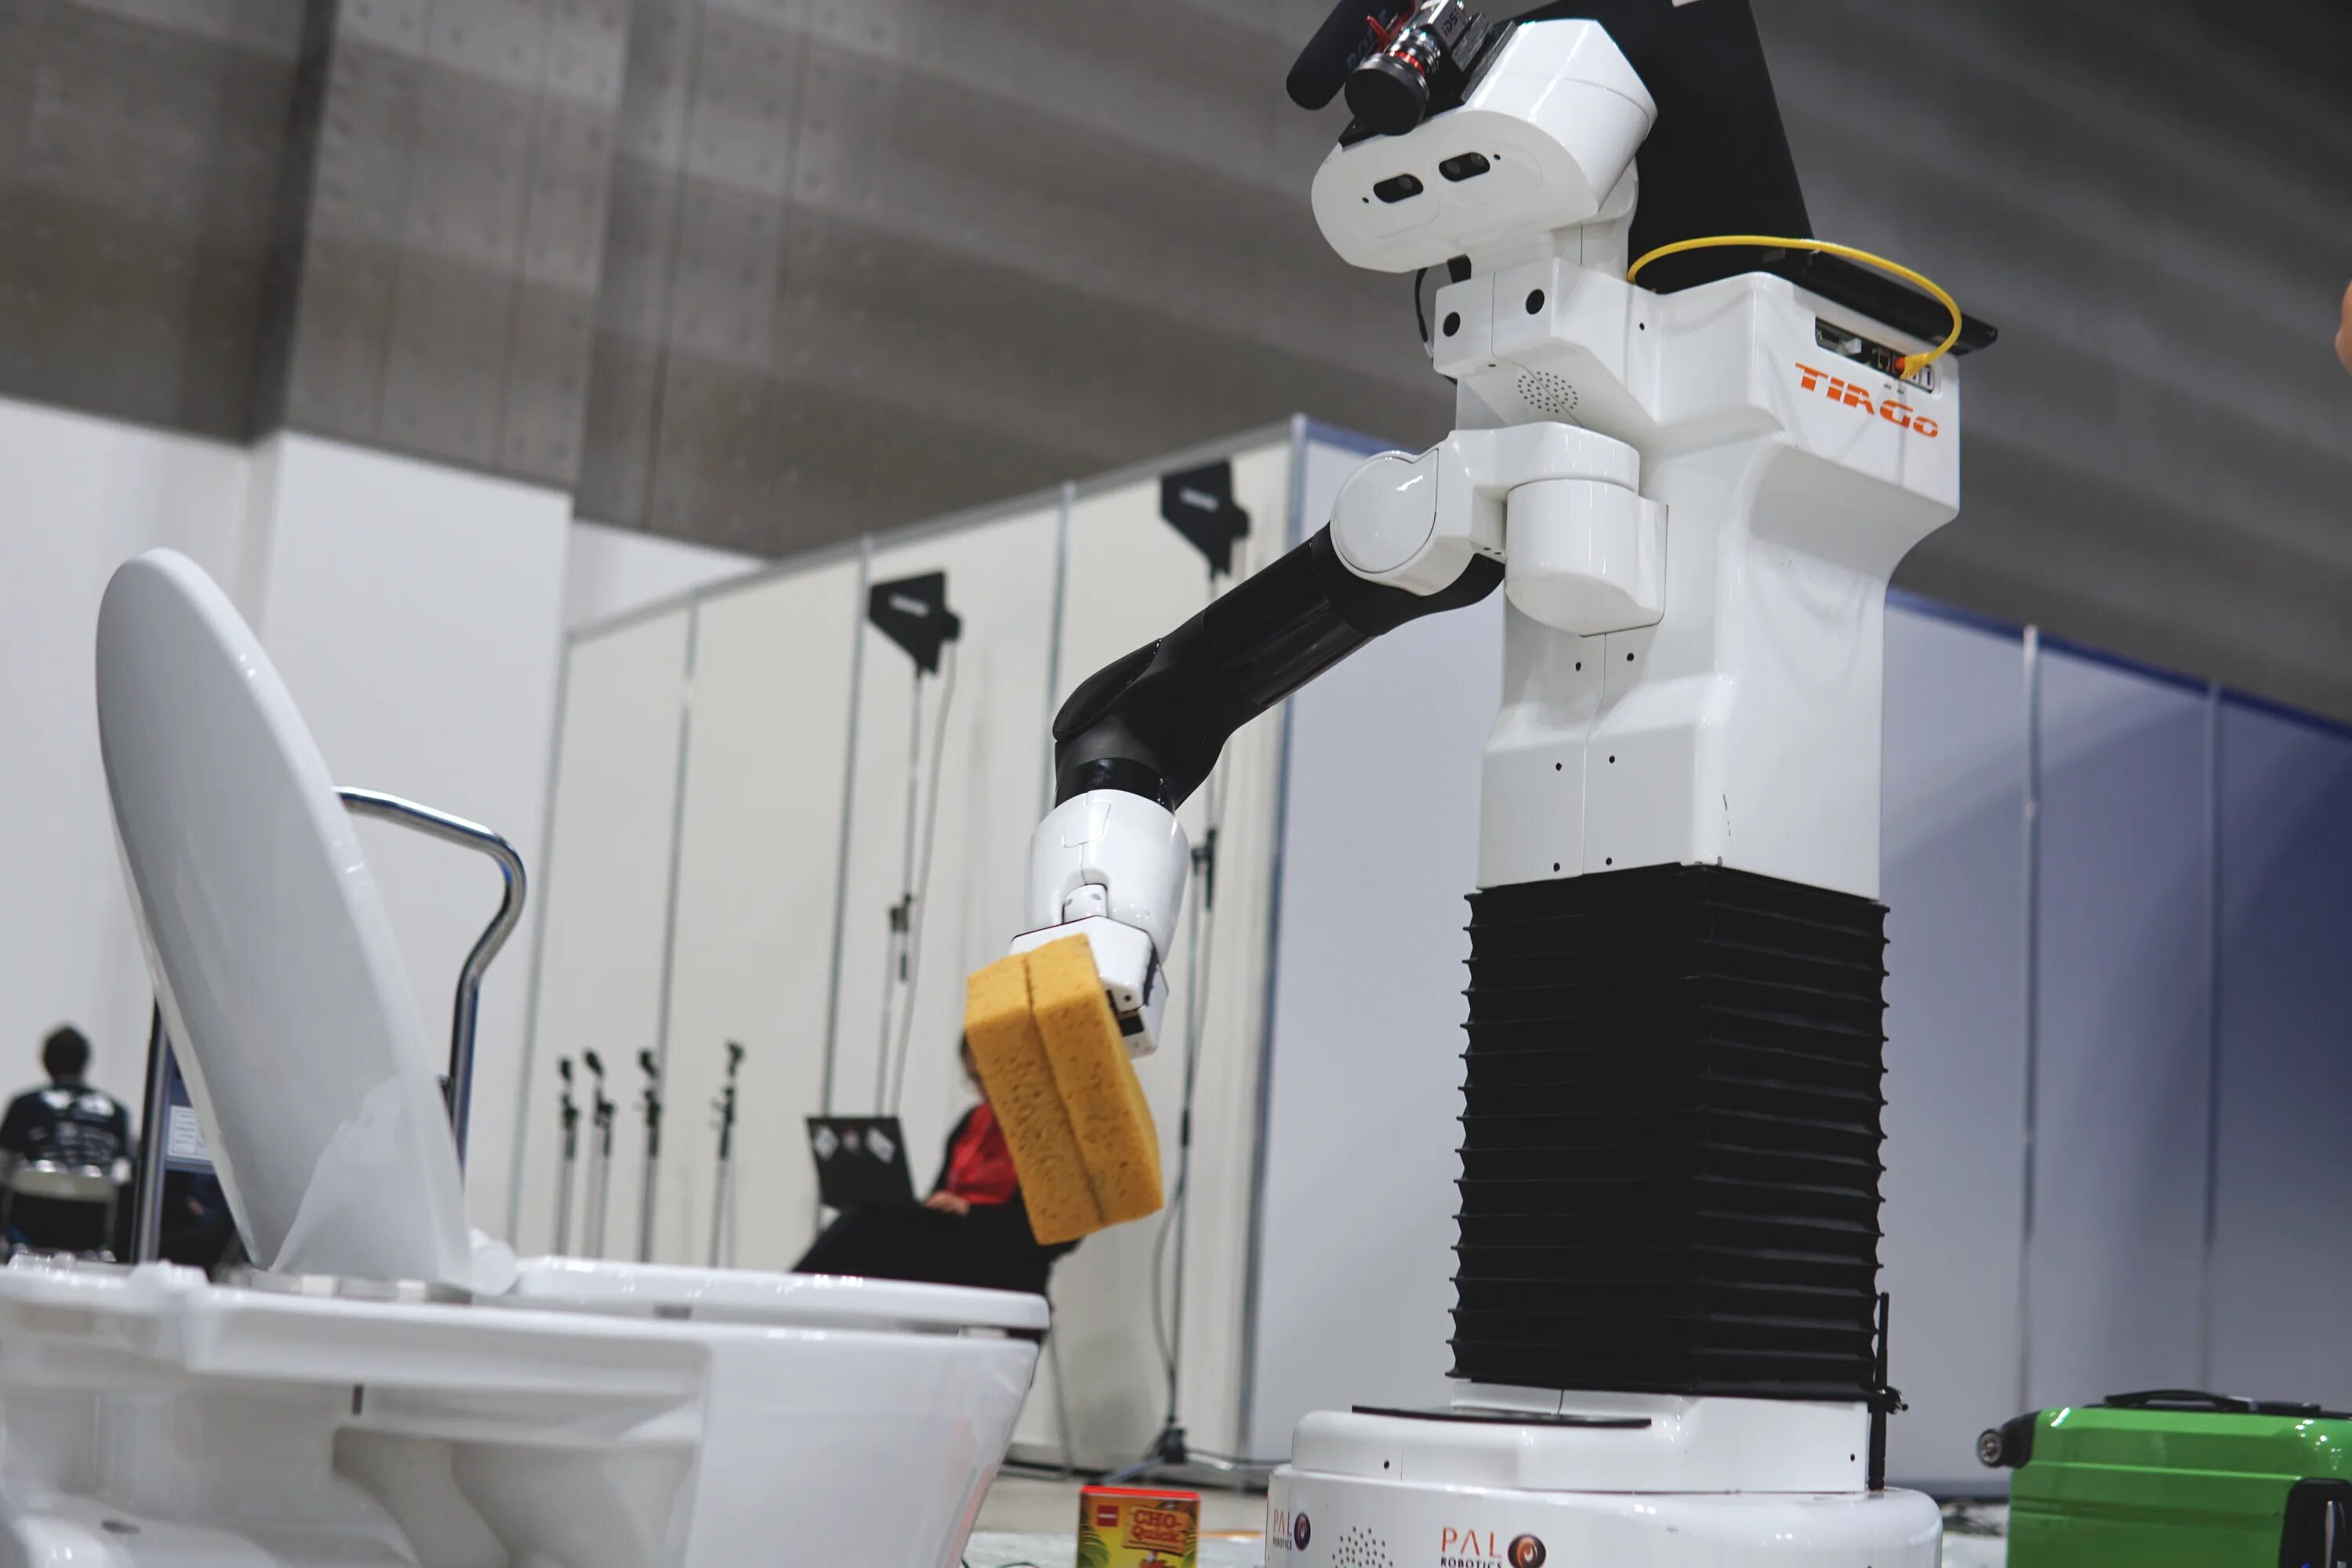 Роботы помощники в быту. Робот помощник по дому. Робот уборщик. Бытовые роботы помощники. Роботы в быту.